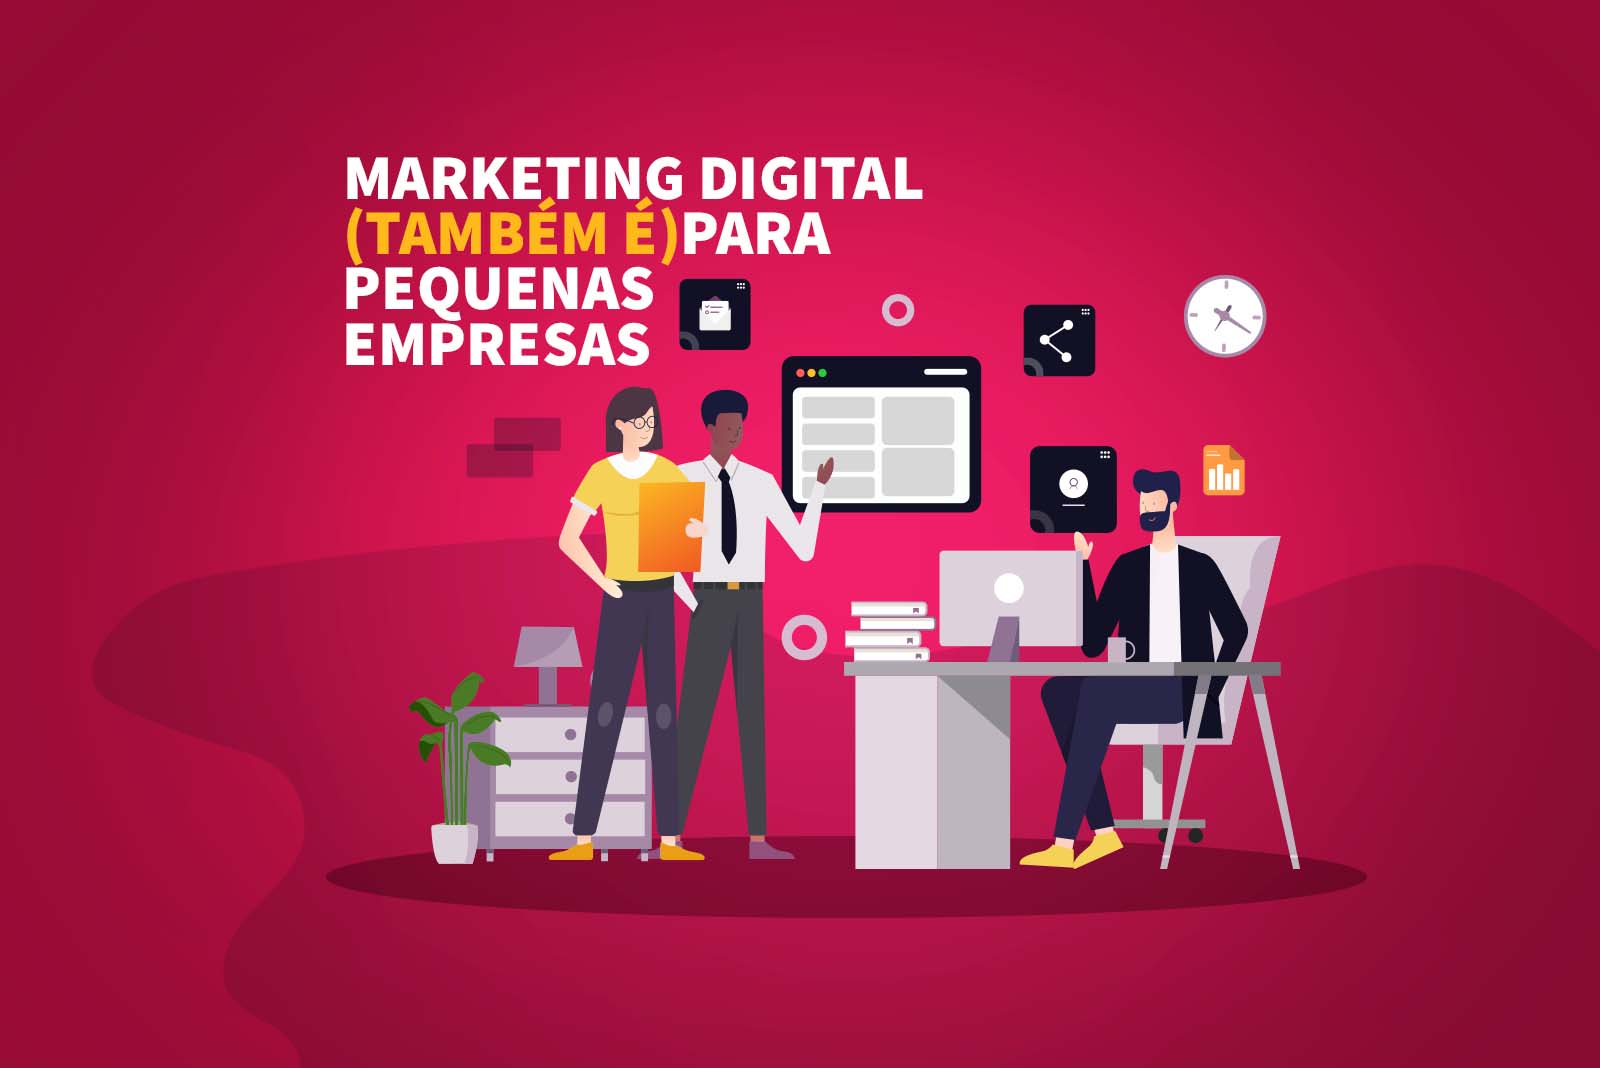 Marketing Digital para pequenas empresas: benefícios e como começar